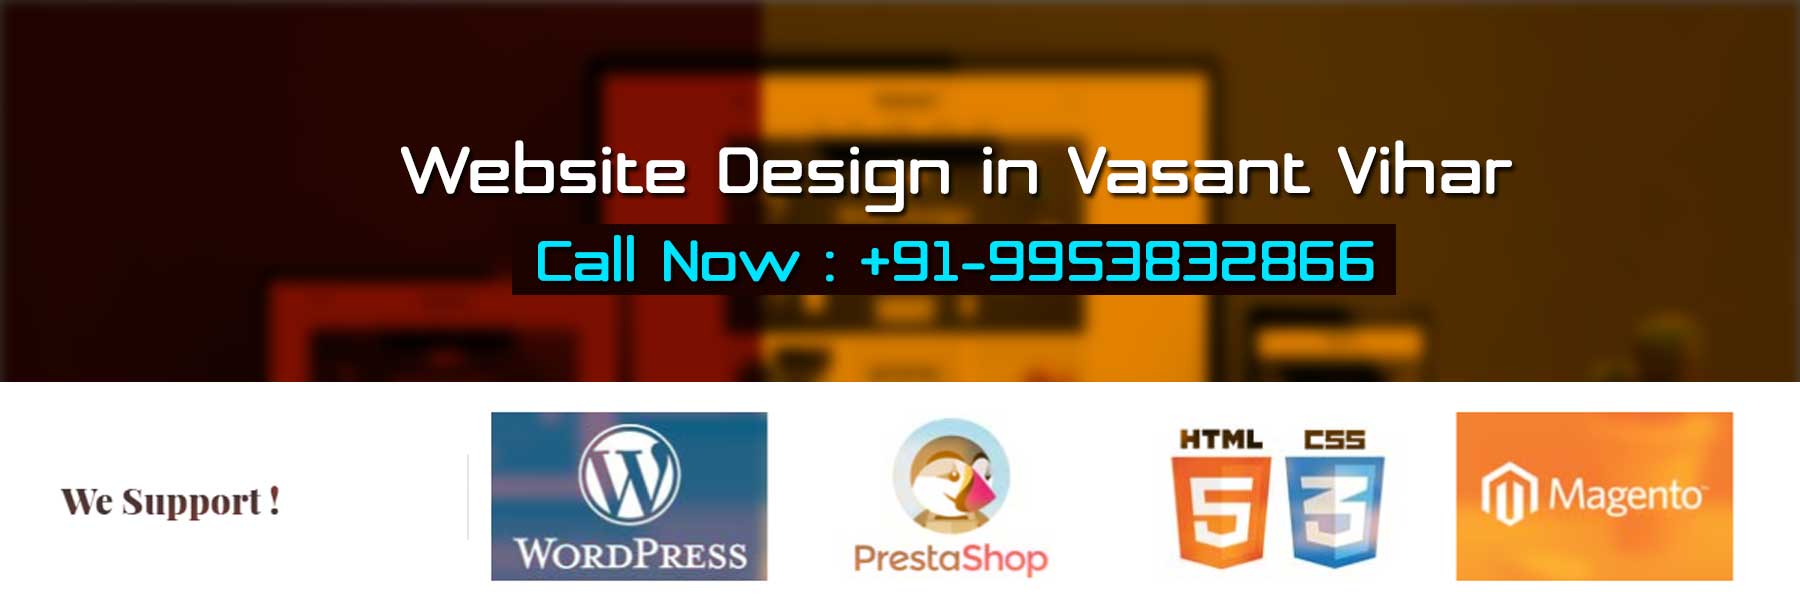 Website Design in Vasant Vihar